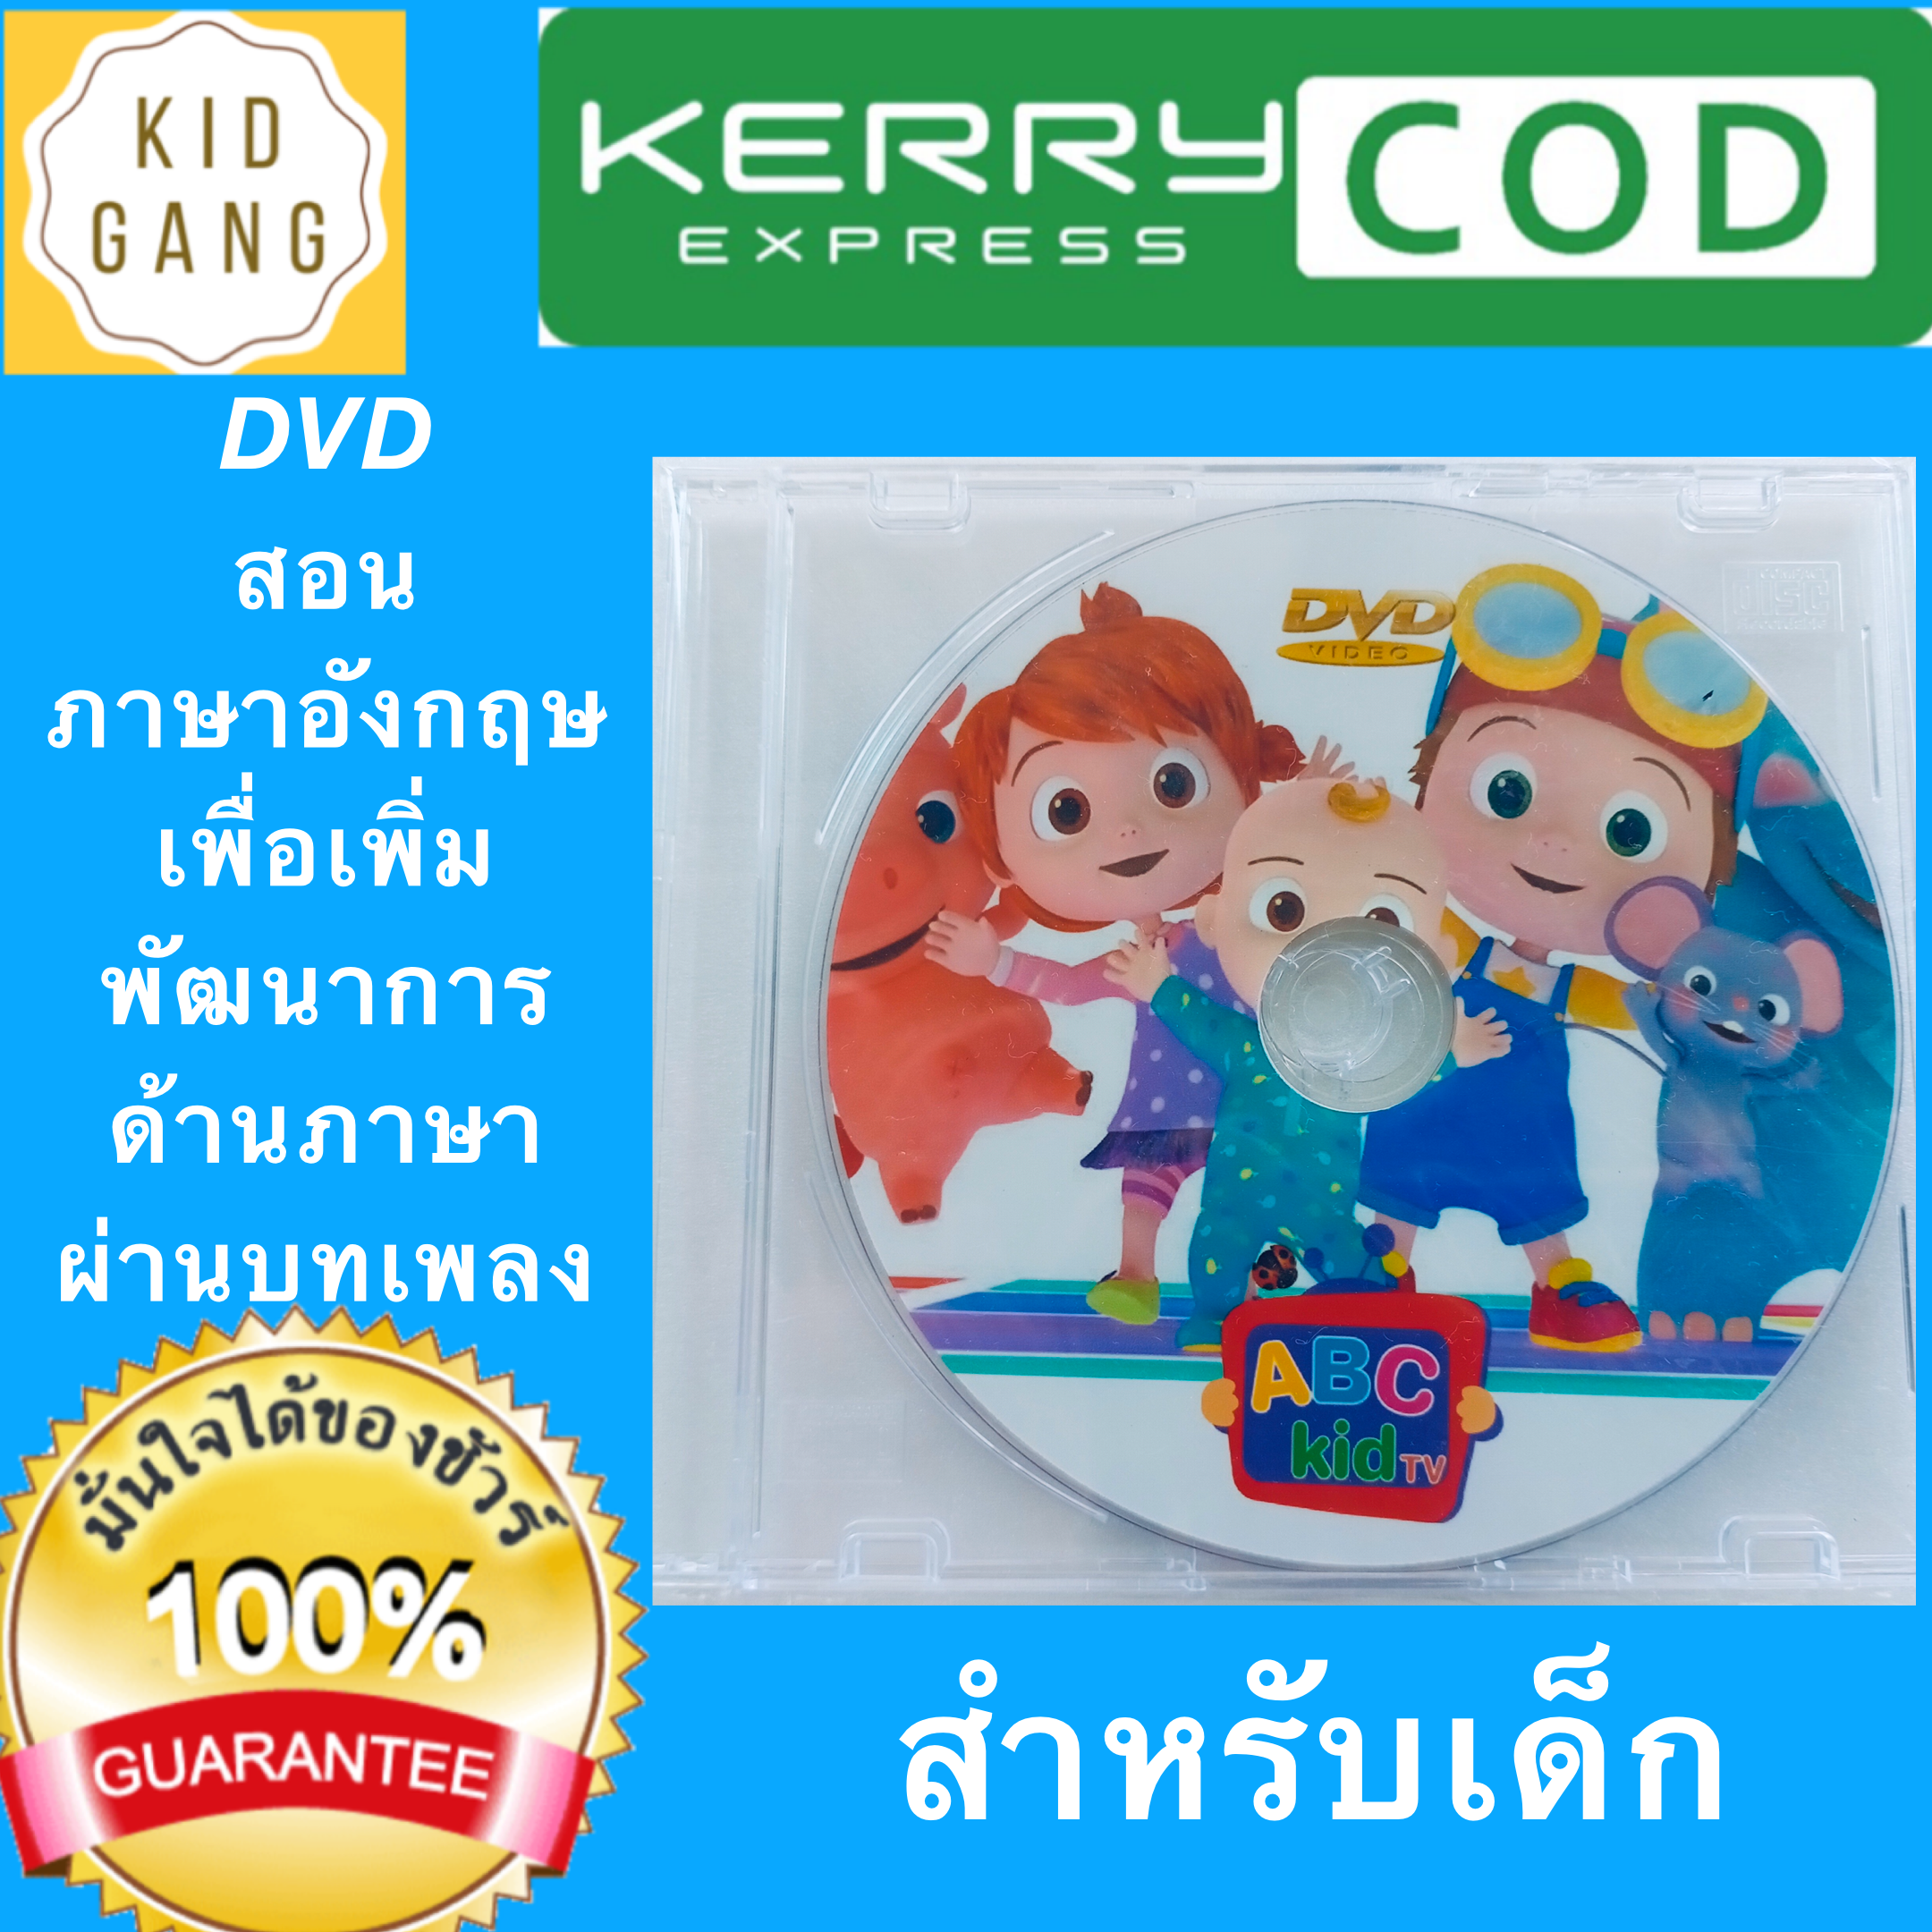 ดีวีดี  DVD สอนภาษาอังกฤษ ผ่านบทเพลง  เพื่อเพิ่มพัฒนาการด้านภาษา  และ สอนออกเสียงภาษาอังกฤษ สำหรับเด็ก ซีดี cd  dvd  english  ร้าน kidgang